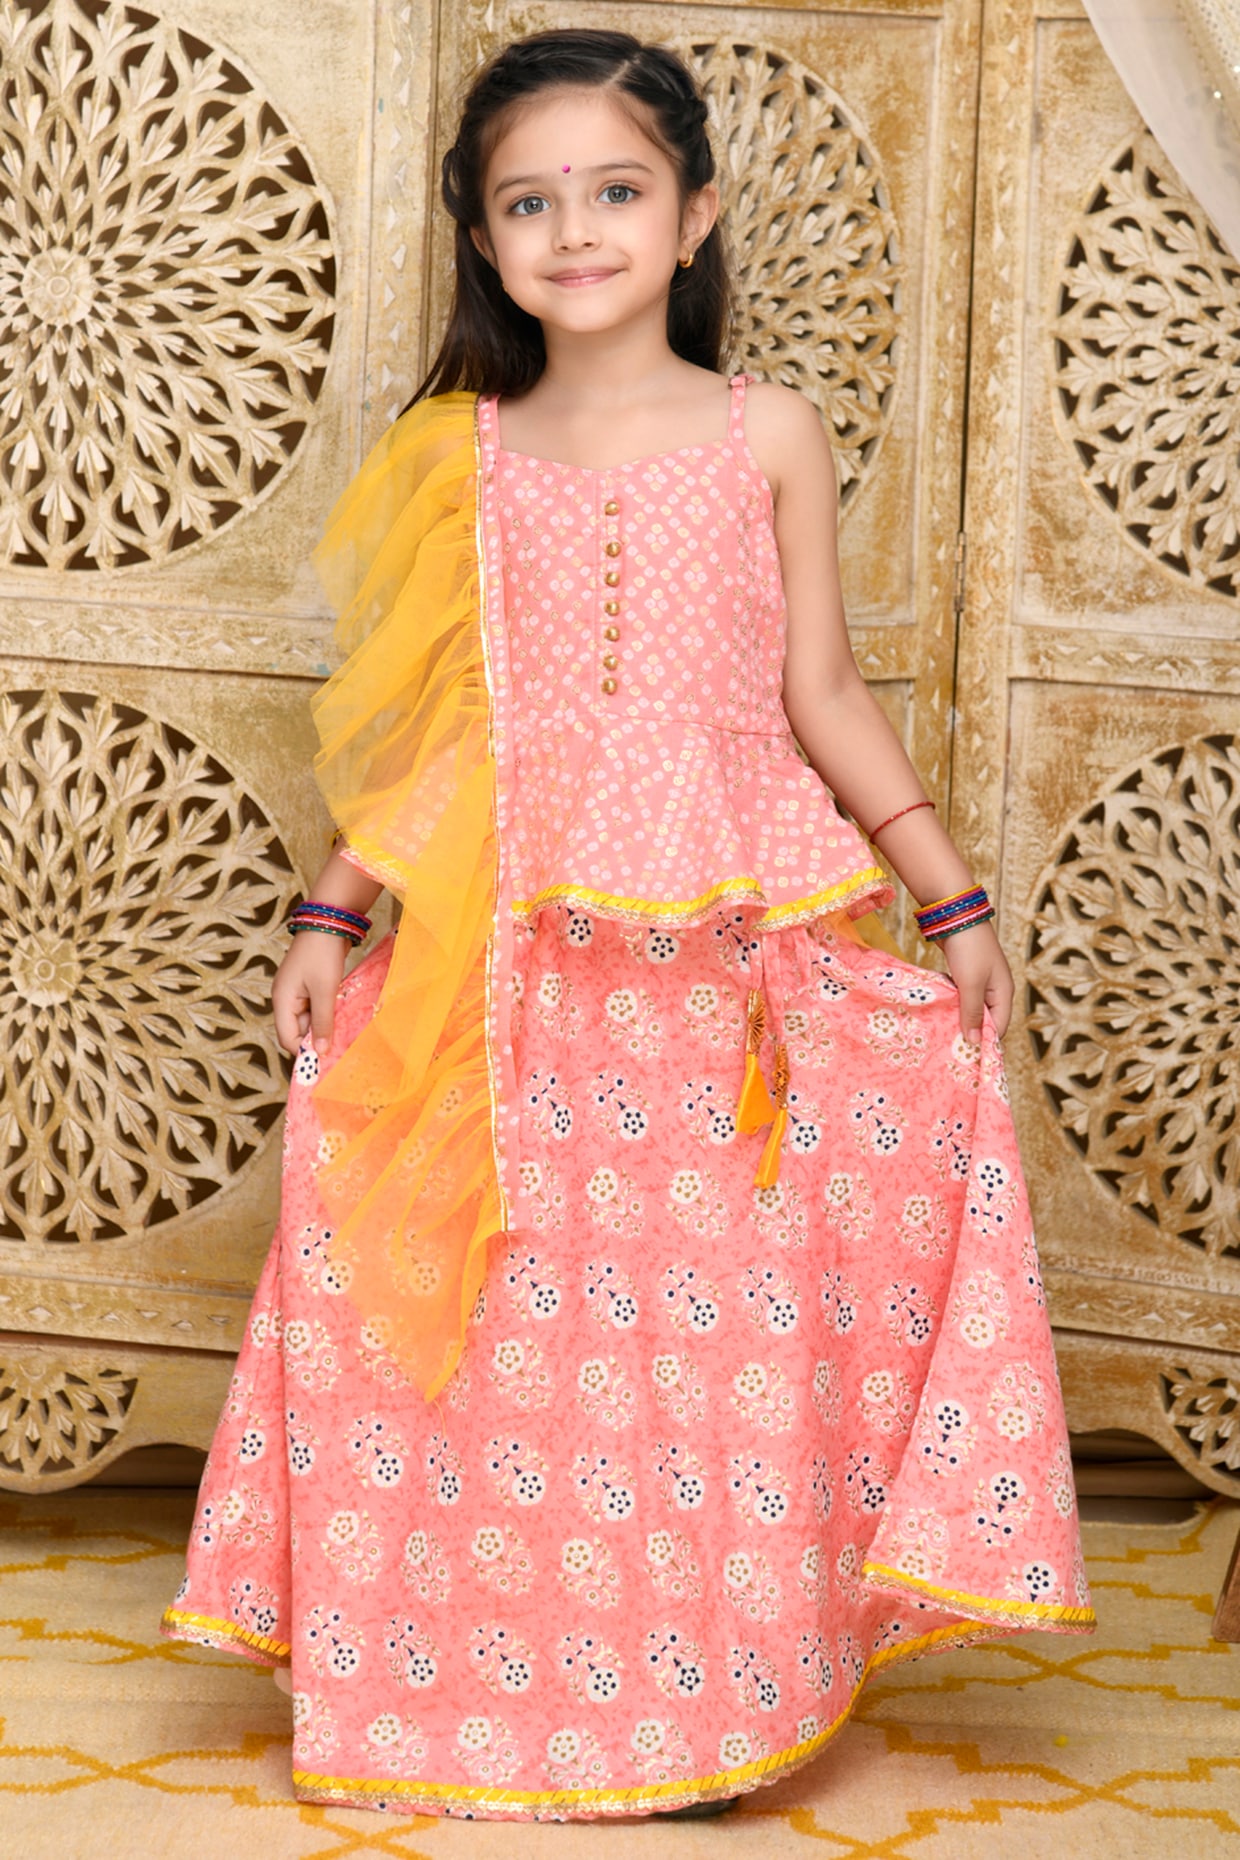 Buy Saka Designs Girls Printed Lehenga Choli With Dupatta - Pink & Yellow  (6-12 Months) at Amazon.in